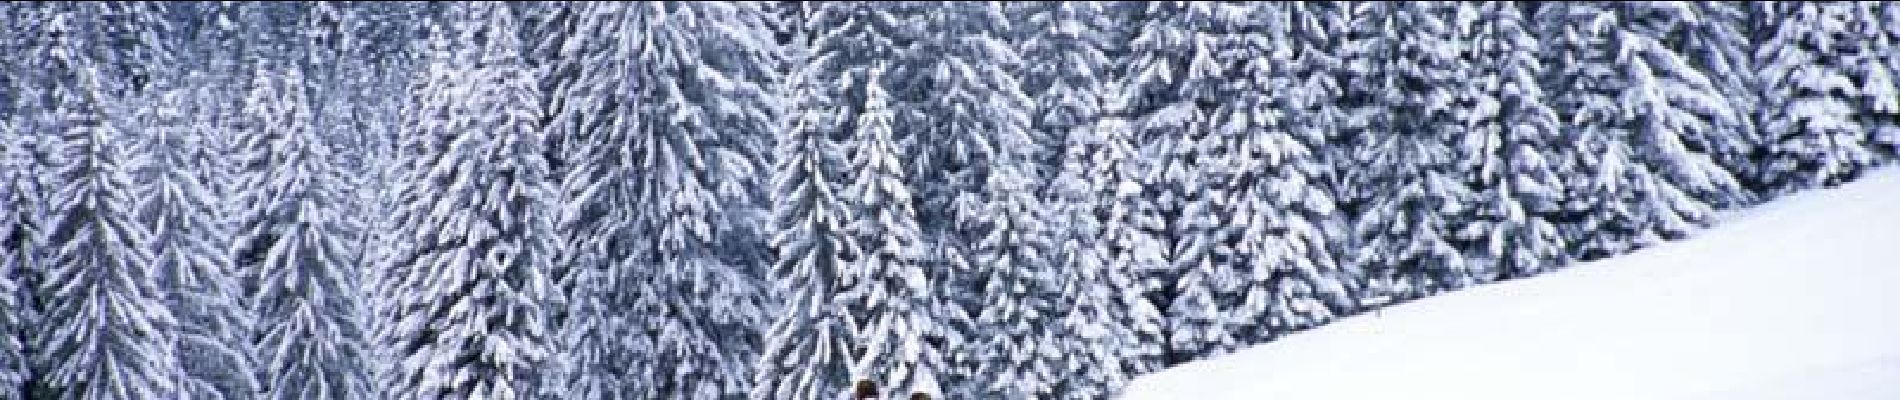 Randonnée Raquettes à neige Morzine - De l'Erigné à Chardonnières en raquettes - Photo